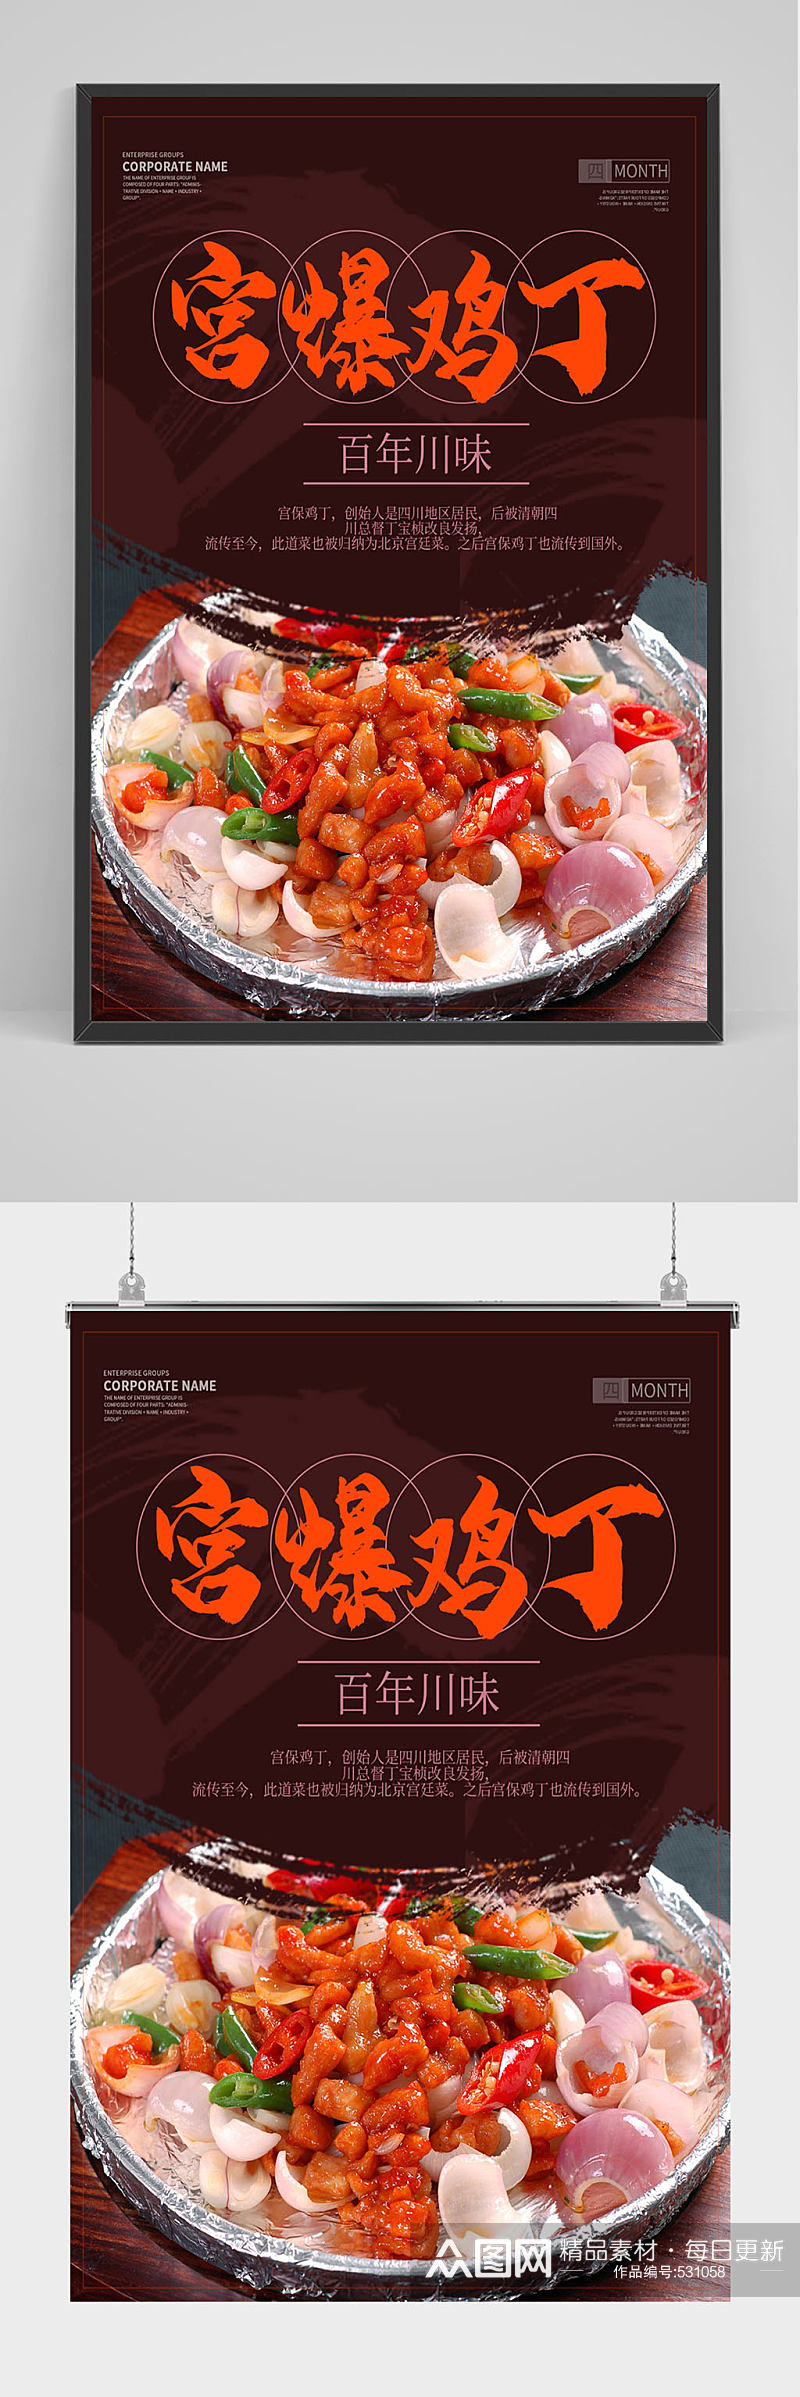 中国风宫保鸡丁海报设计素材